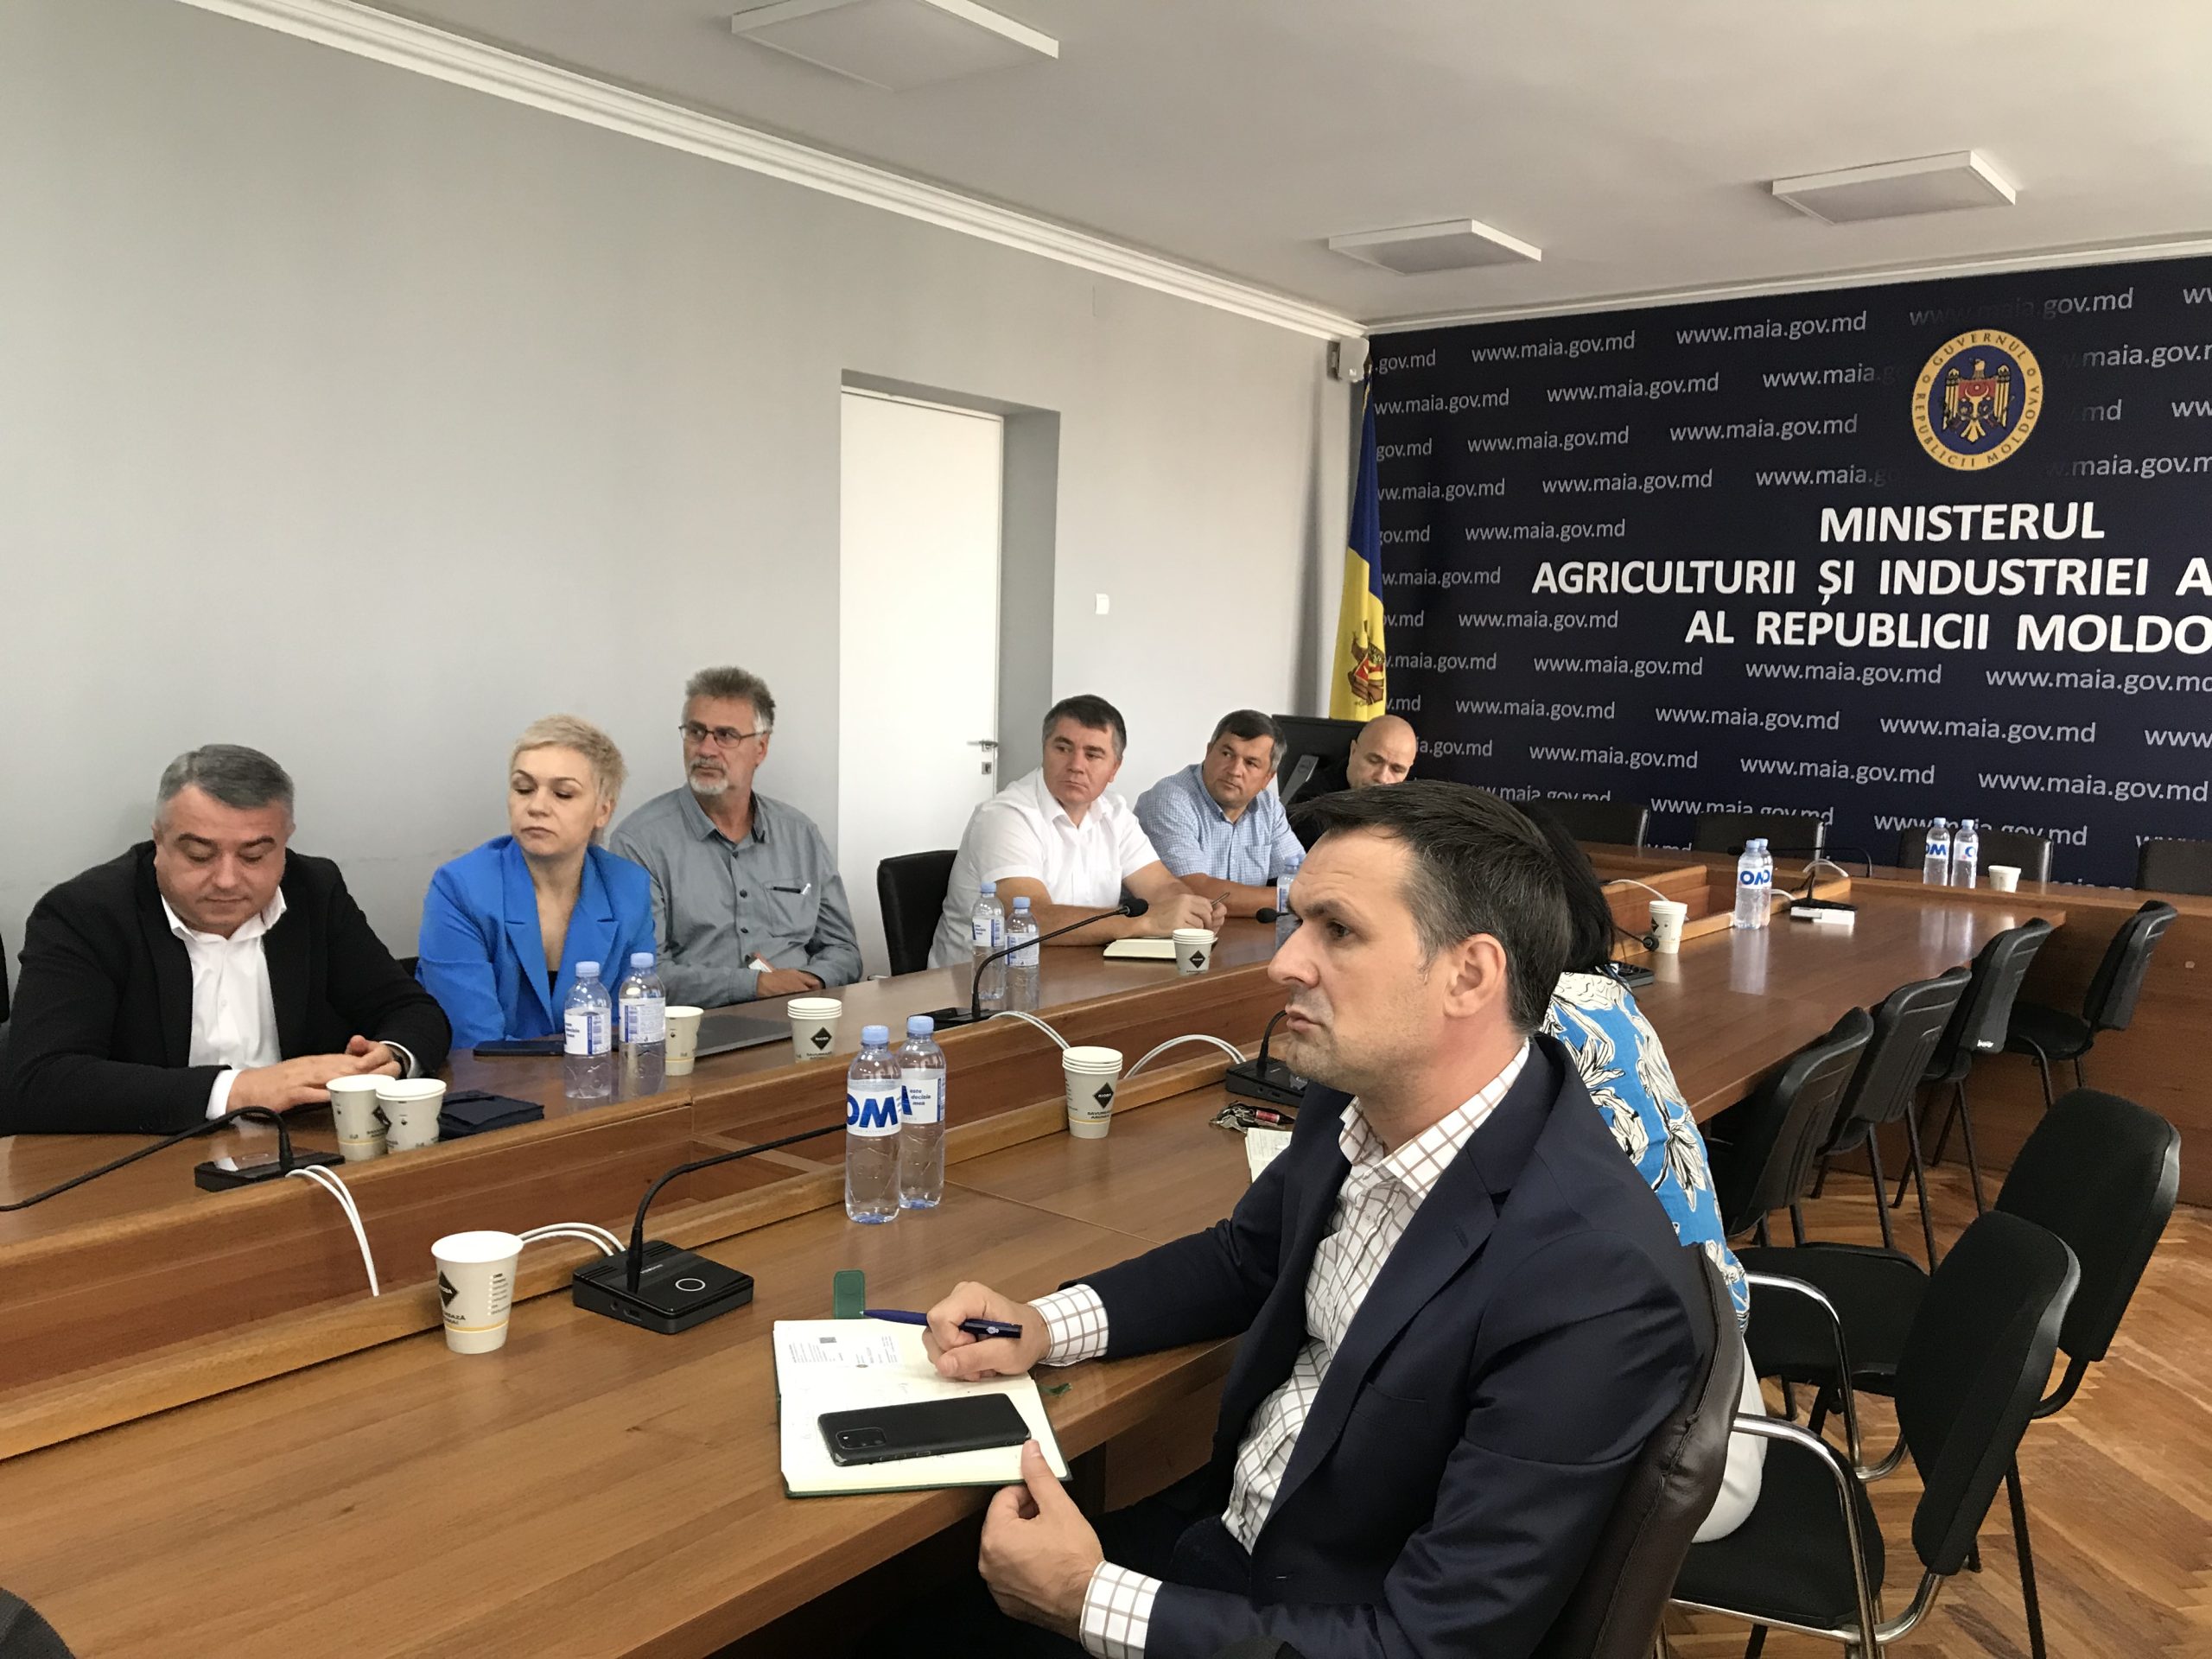 UCIP IFAD anunță lansarea unui proiect ambițios pentru dezvoltarea agriculturii și infrastructurii în Republica Moldova